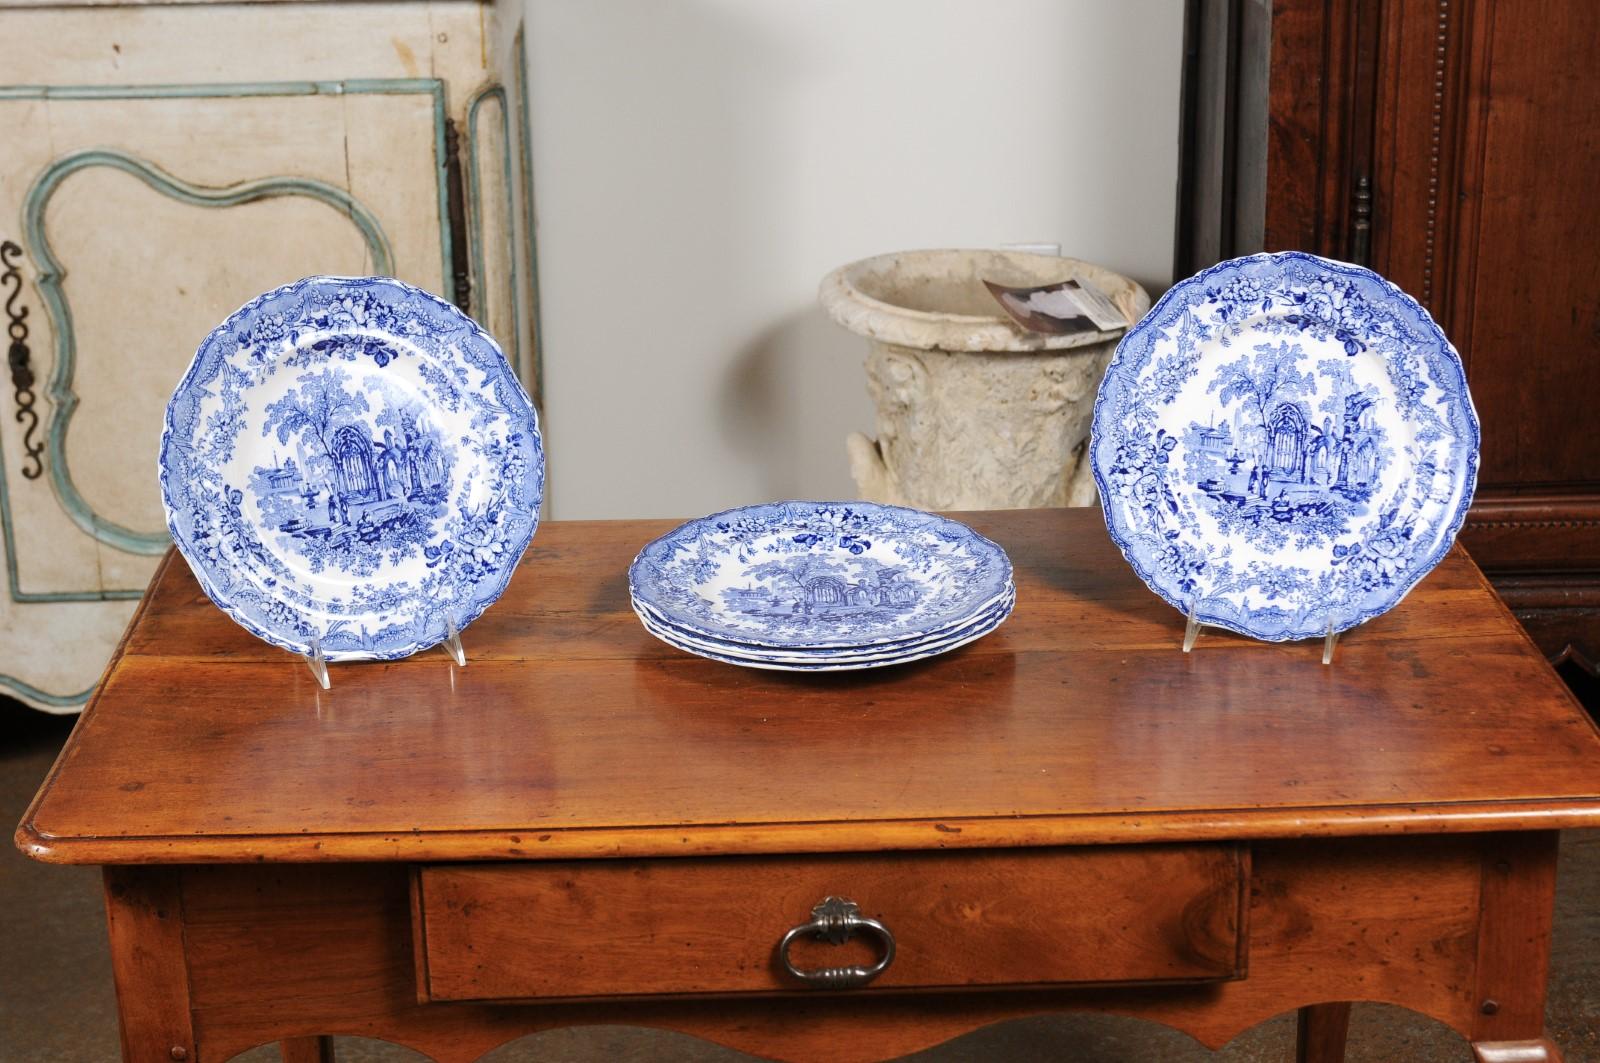 Six assiettes à dîner anglaises en porcelaine bleue et blanche du XIXe siècle, avec des motifs de ruines gothiques, vendues individuellement. Nées en Angleterre au XIXe siècle, chacune de ces six assiettes plates bleues et blanches est ornée d'un